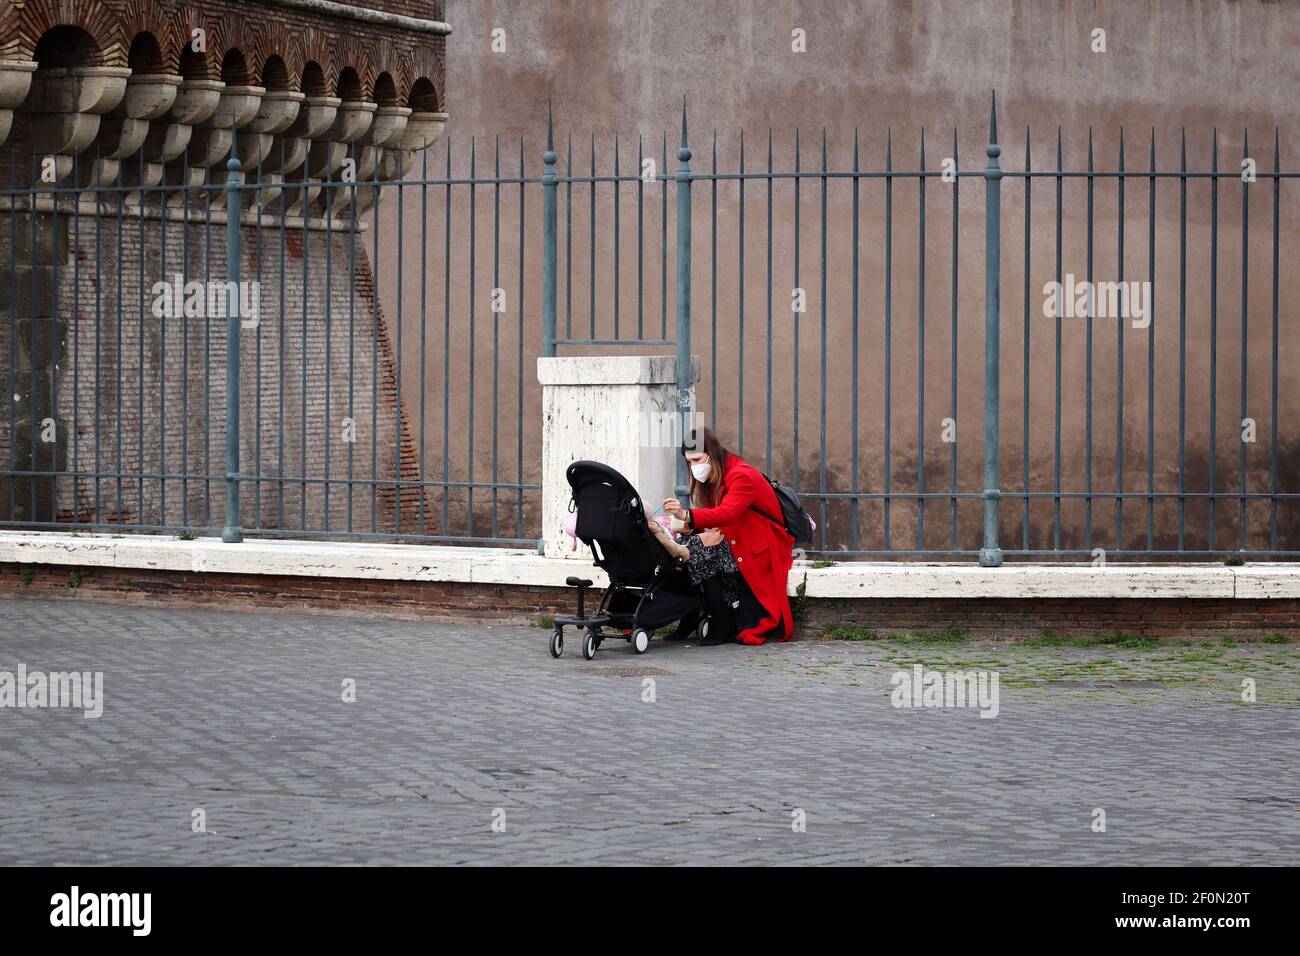 Roma, Italia-6 marzo 2021: Una madre nutre il suo bambino in un passeggino, durante la pandemia del covid-19. Foto Stock